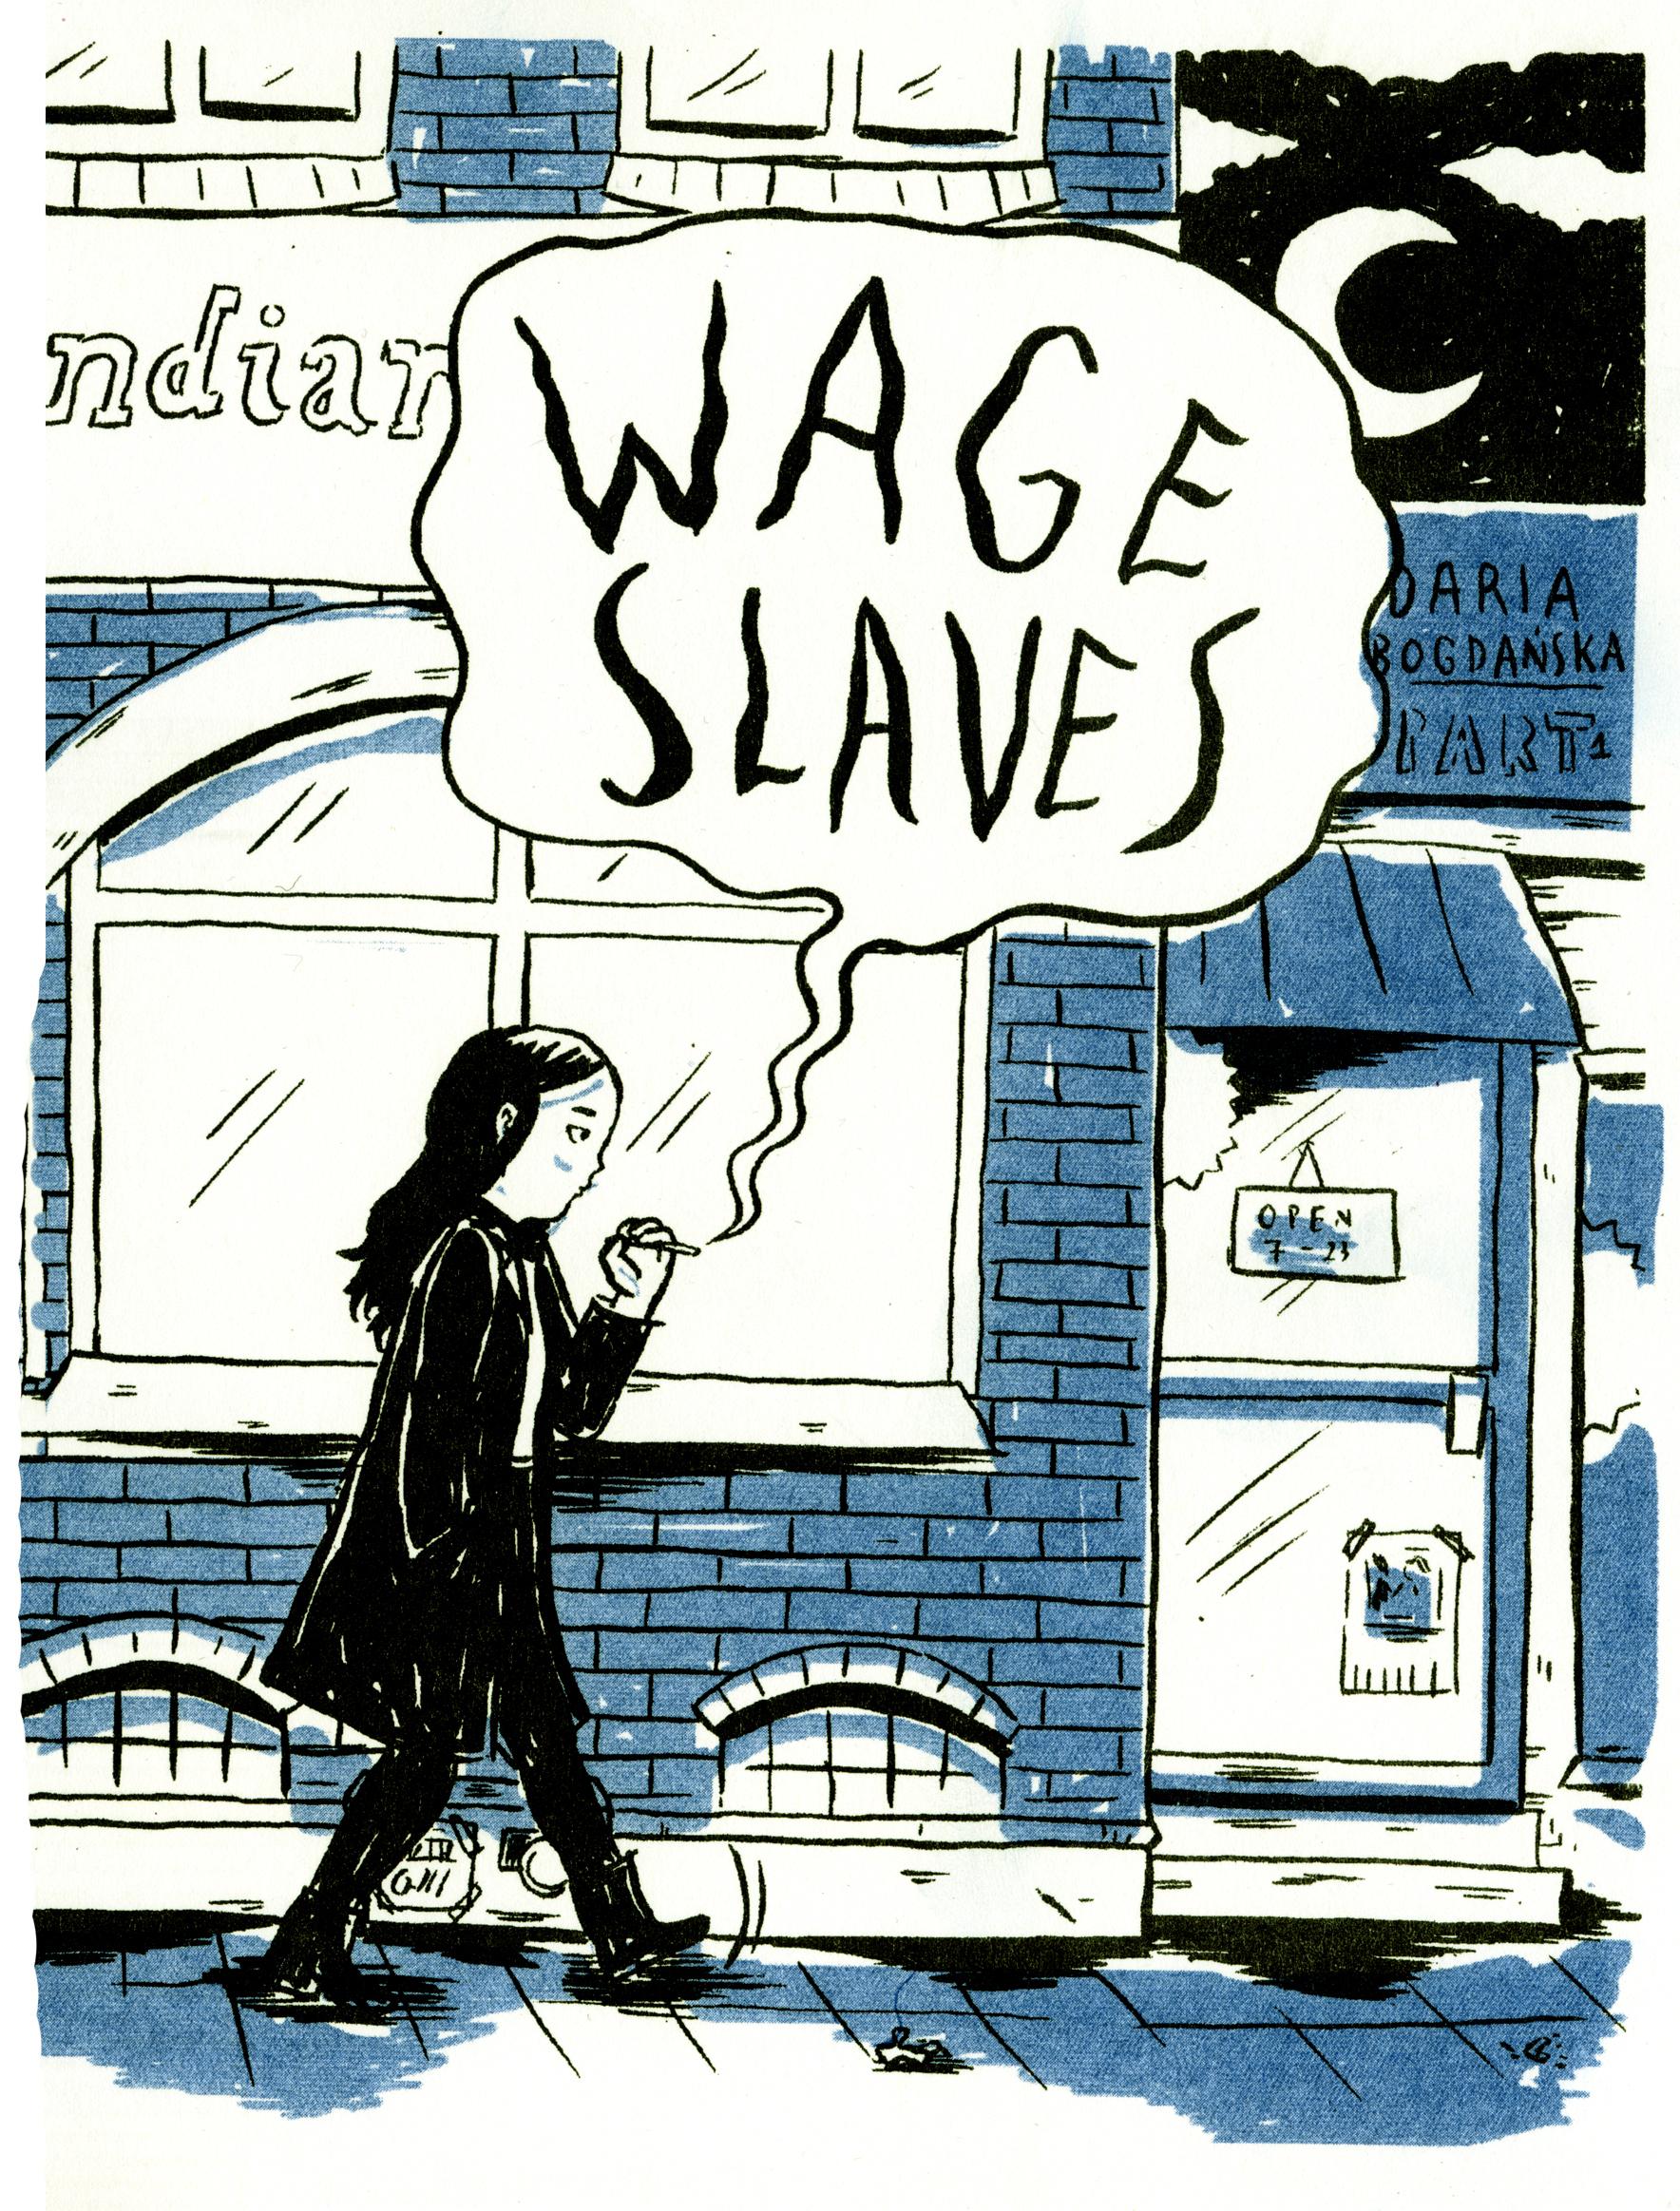 Daria Bogdanskas seriealbum ”Wage slaves” från 2016 (Ordfront), om restaurangpersonal som utnyttjas av arbetsgivare.